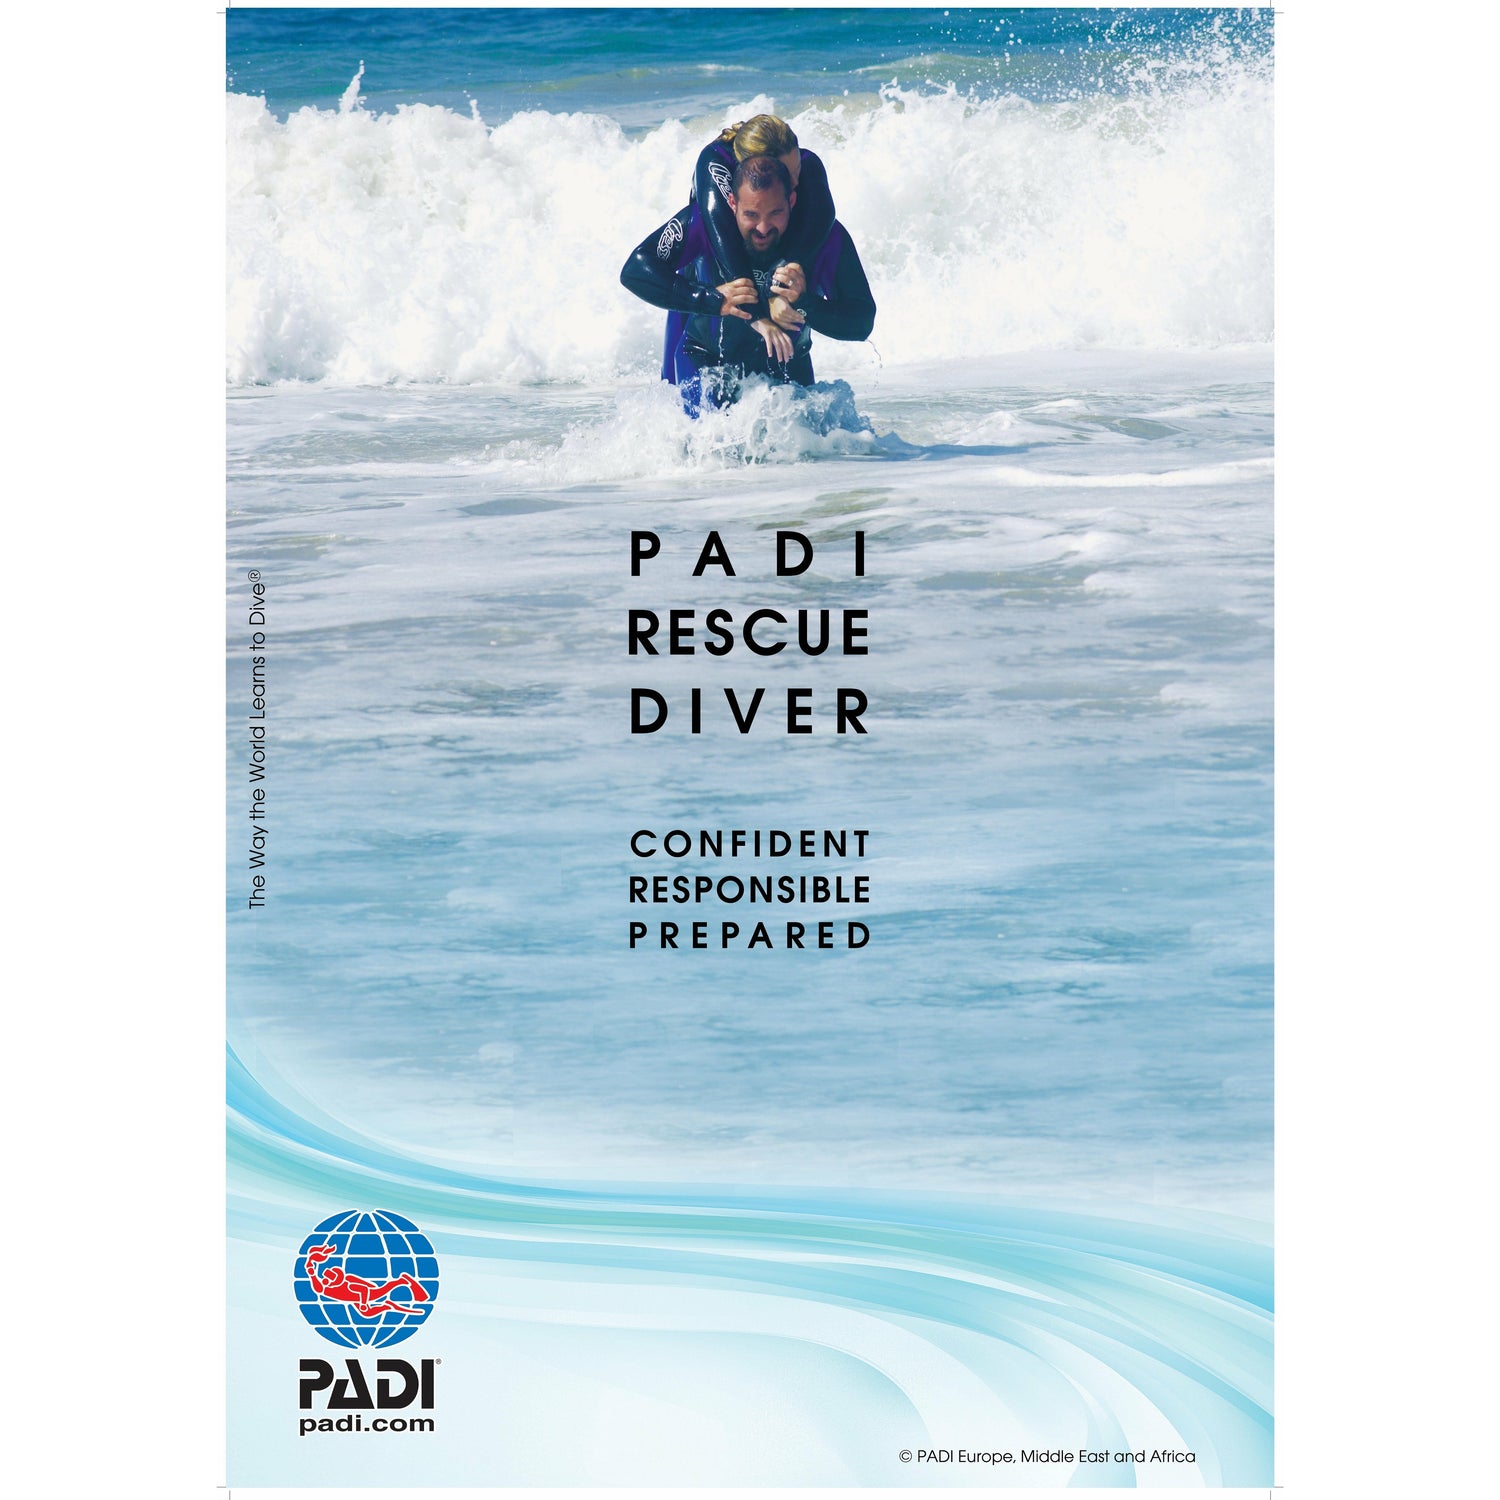 PADI Rescue Diver Course - Go Dive Tasmania